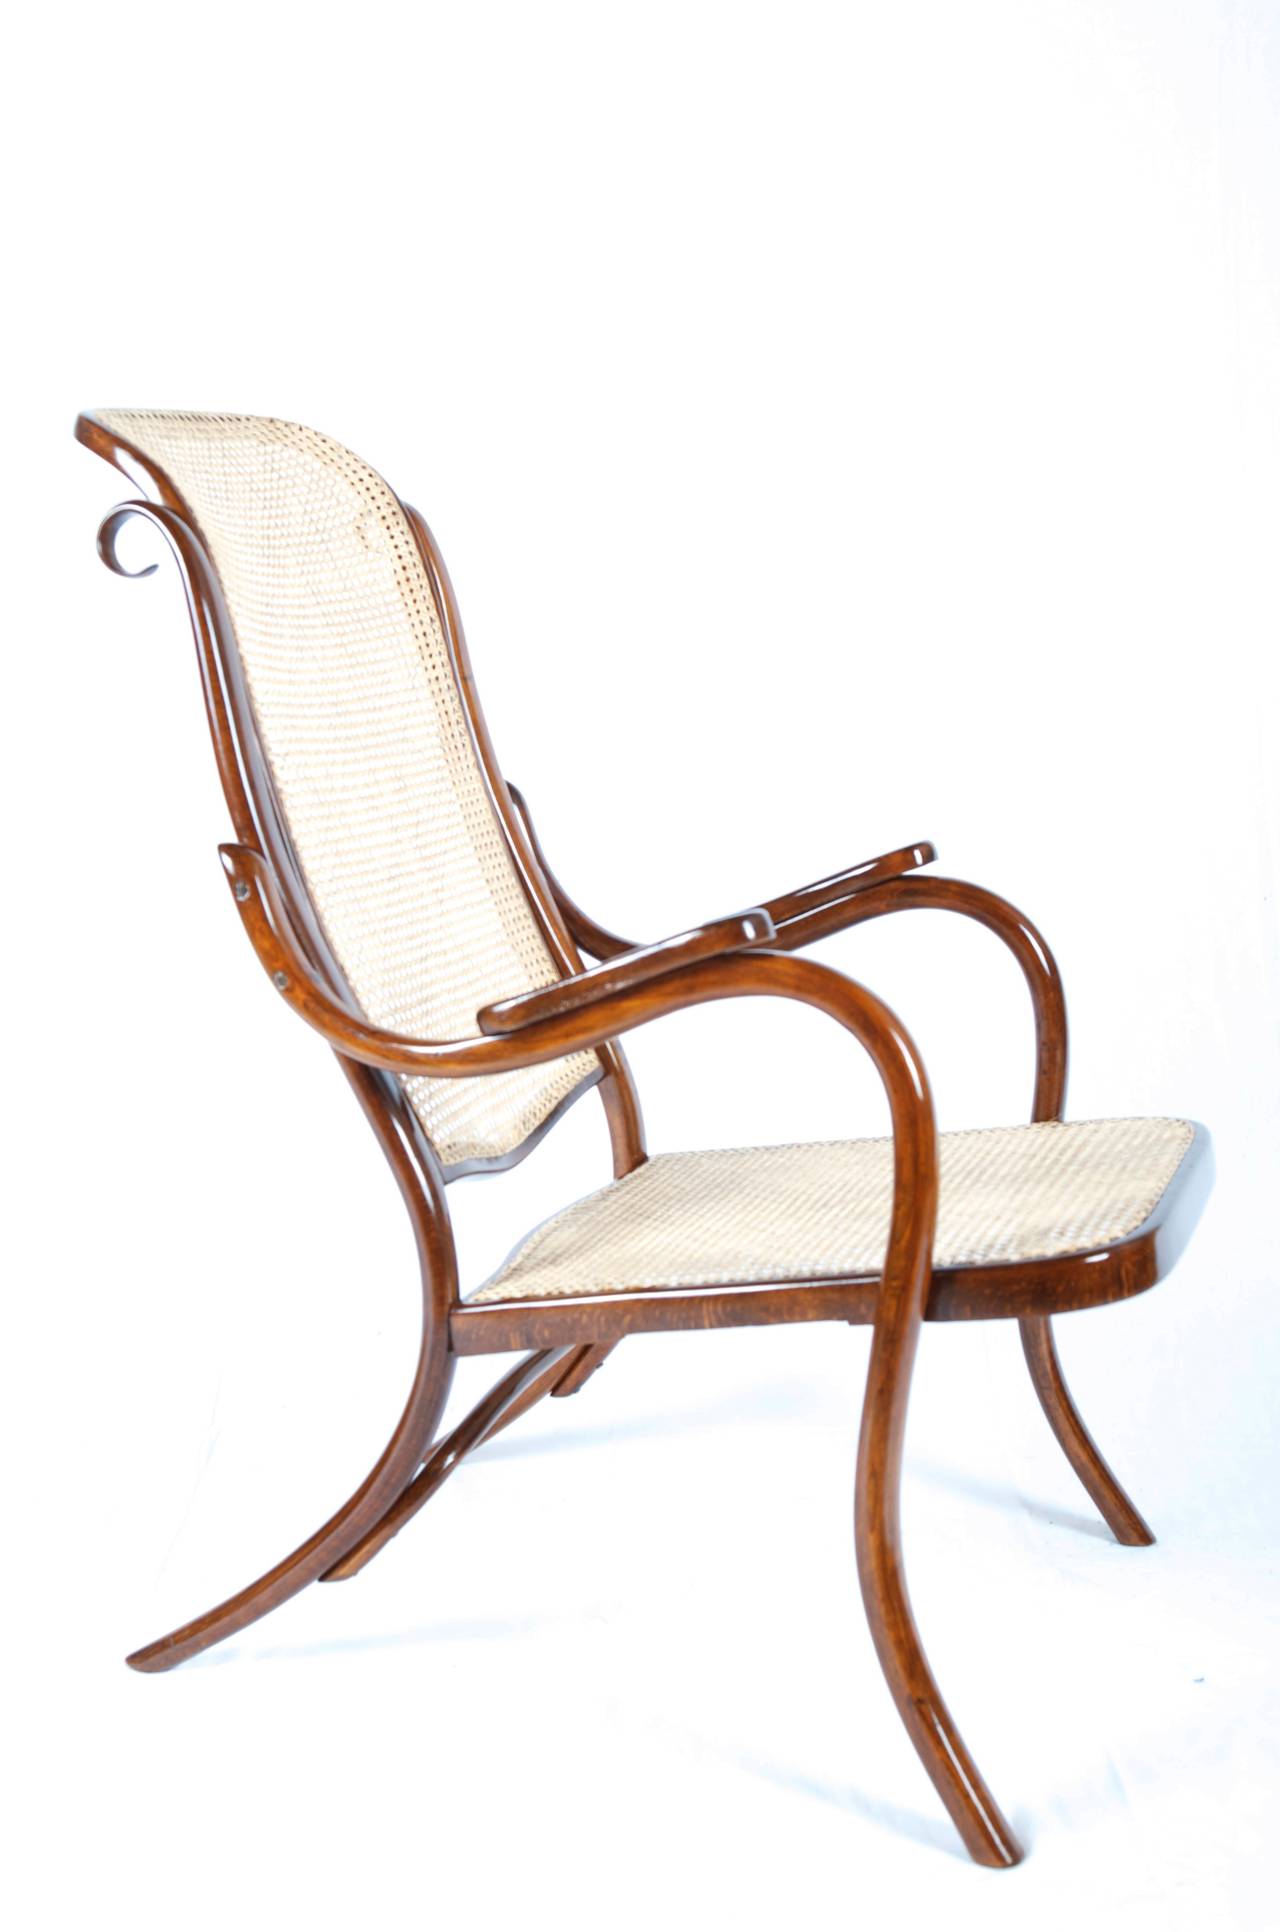 J. J. Kohn einfacher Sessel ausgezeichnet restauriert mit neuem Rohr auf Sitz und Rücken
die Rückseite ist verzogen (siehe Bilder) der Grund für den günstigen Preis.